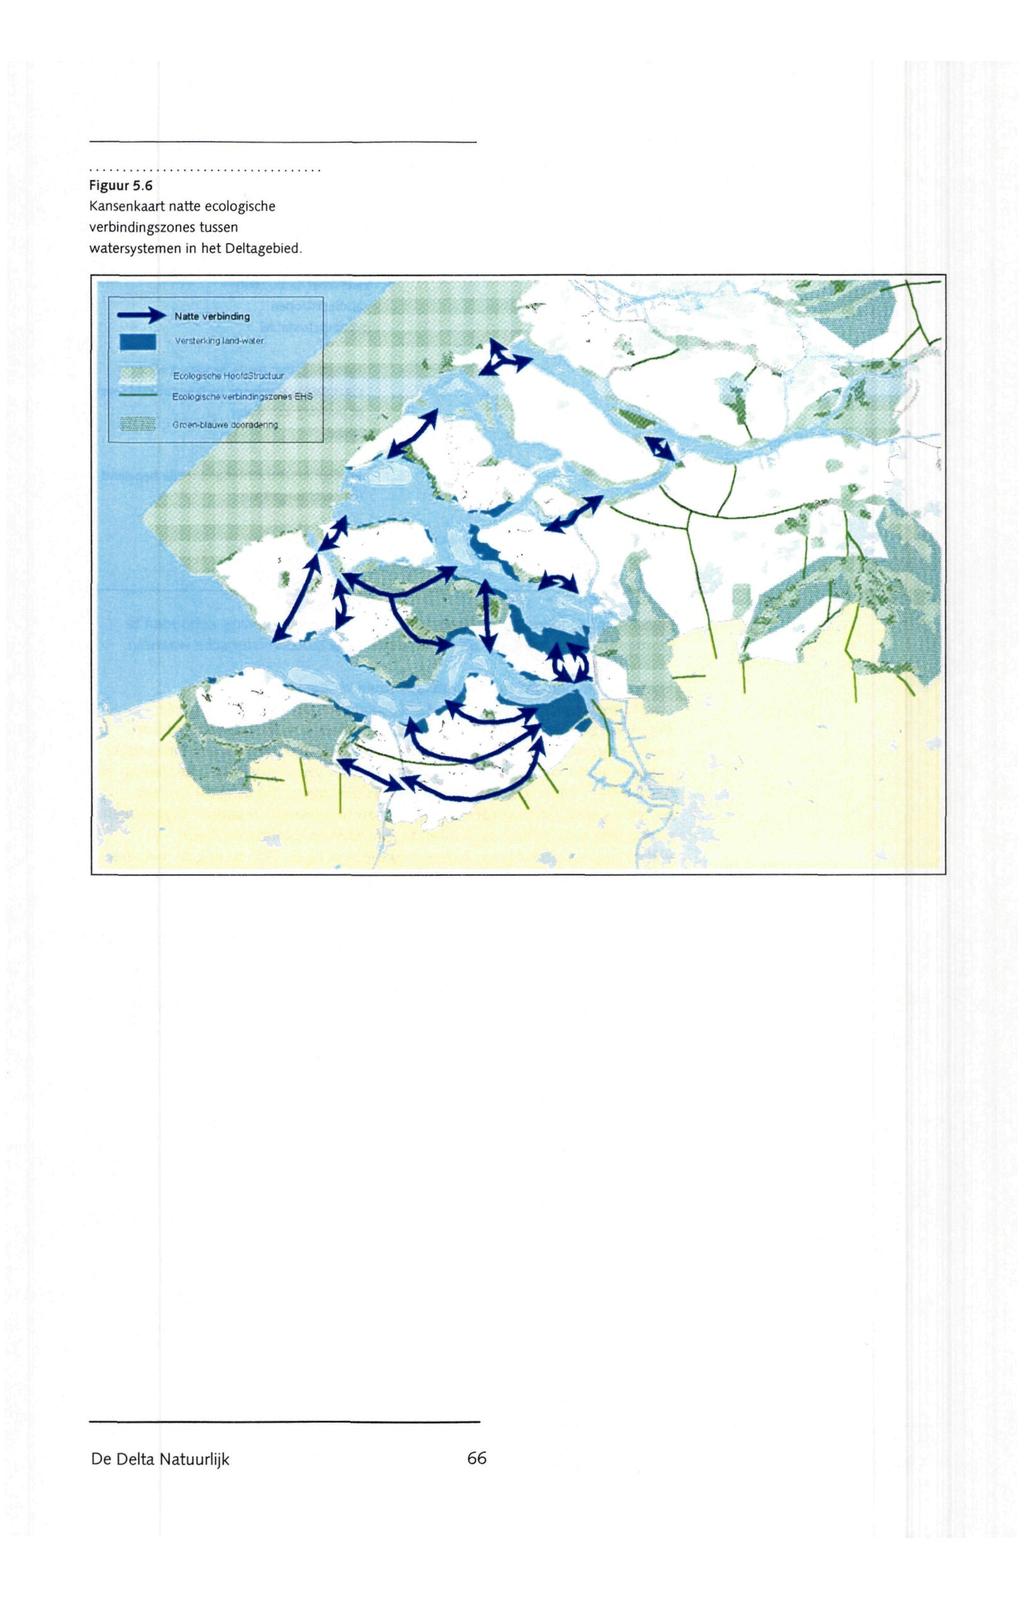 Figuur 5.6 Kansenkaart natte ecologische verbindingszones tussen watersystemen in het Deltagebied.